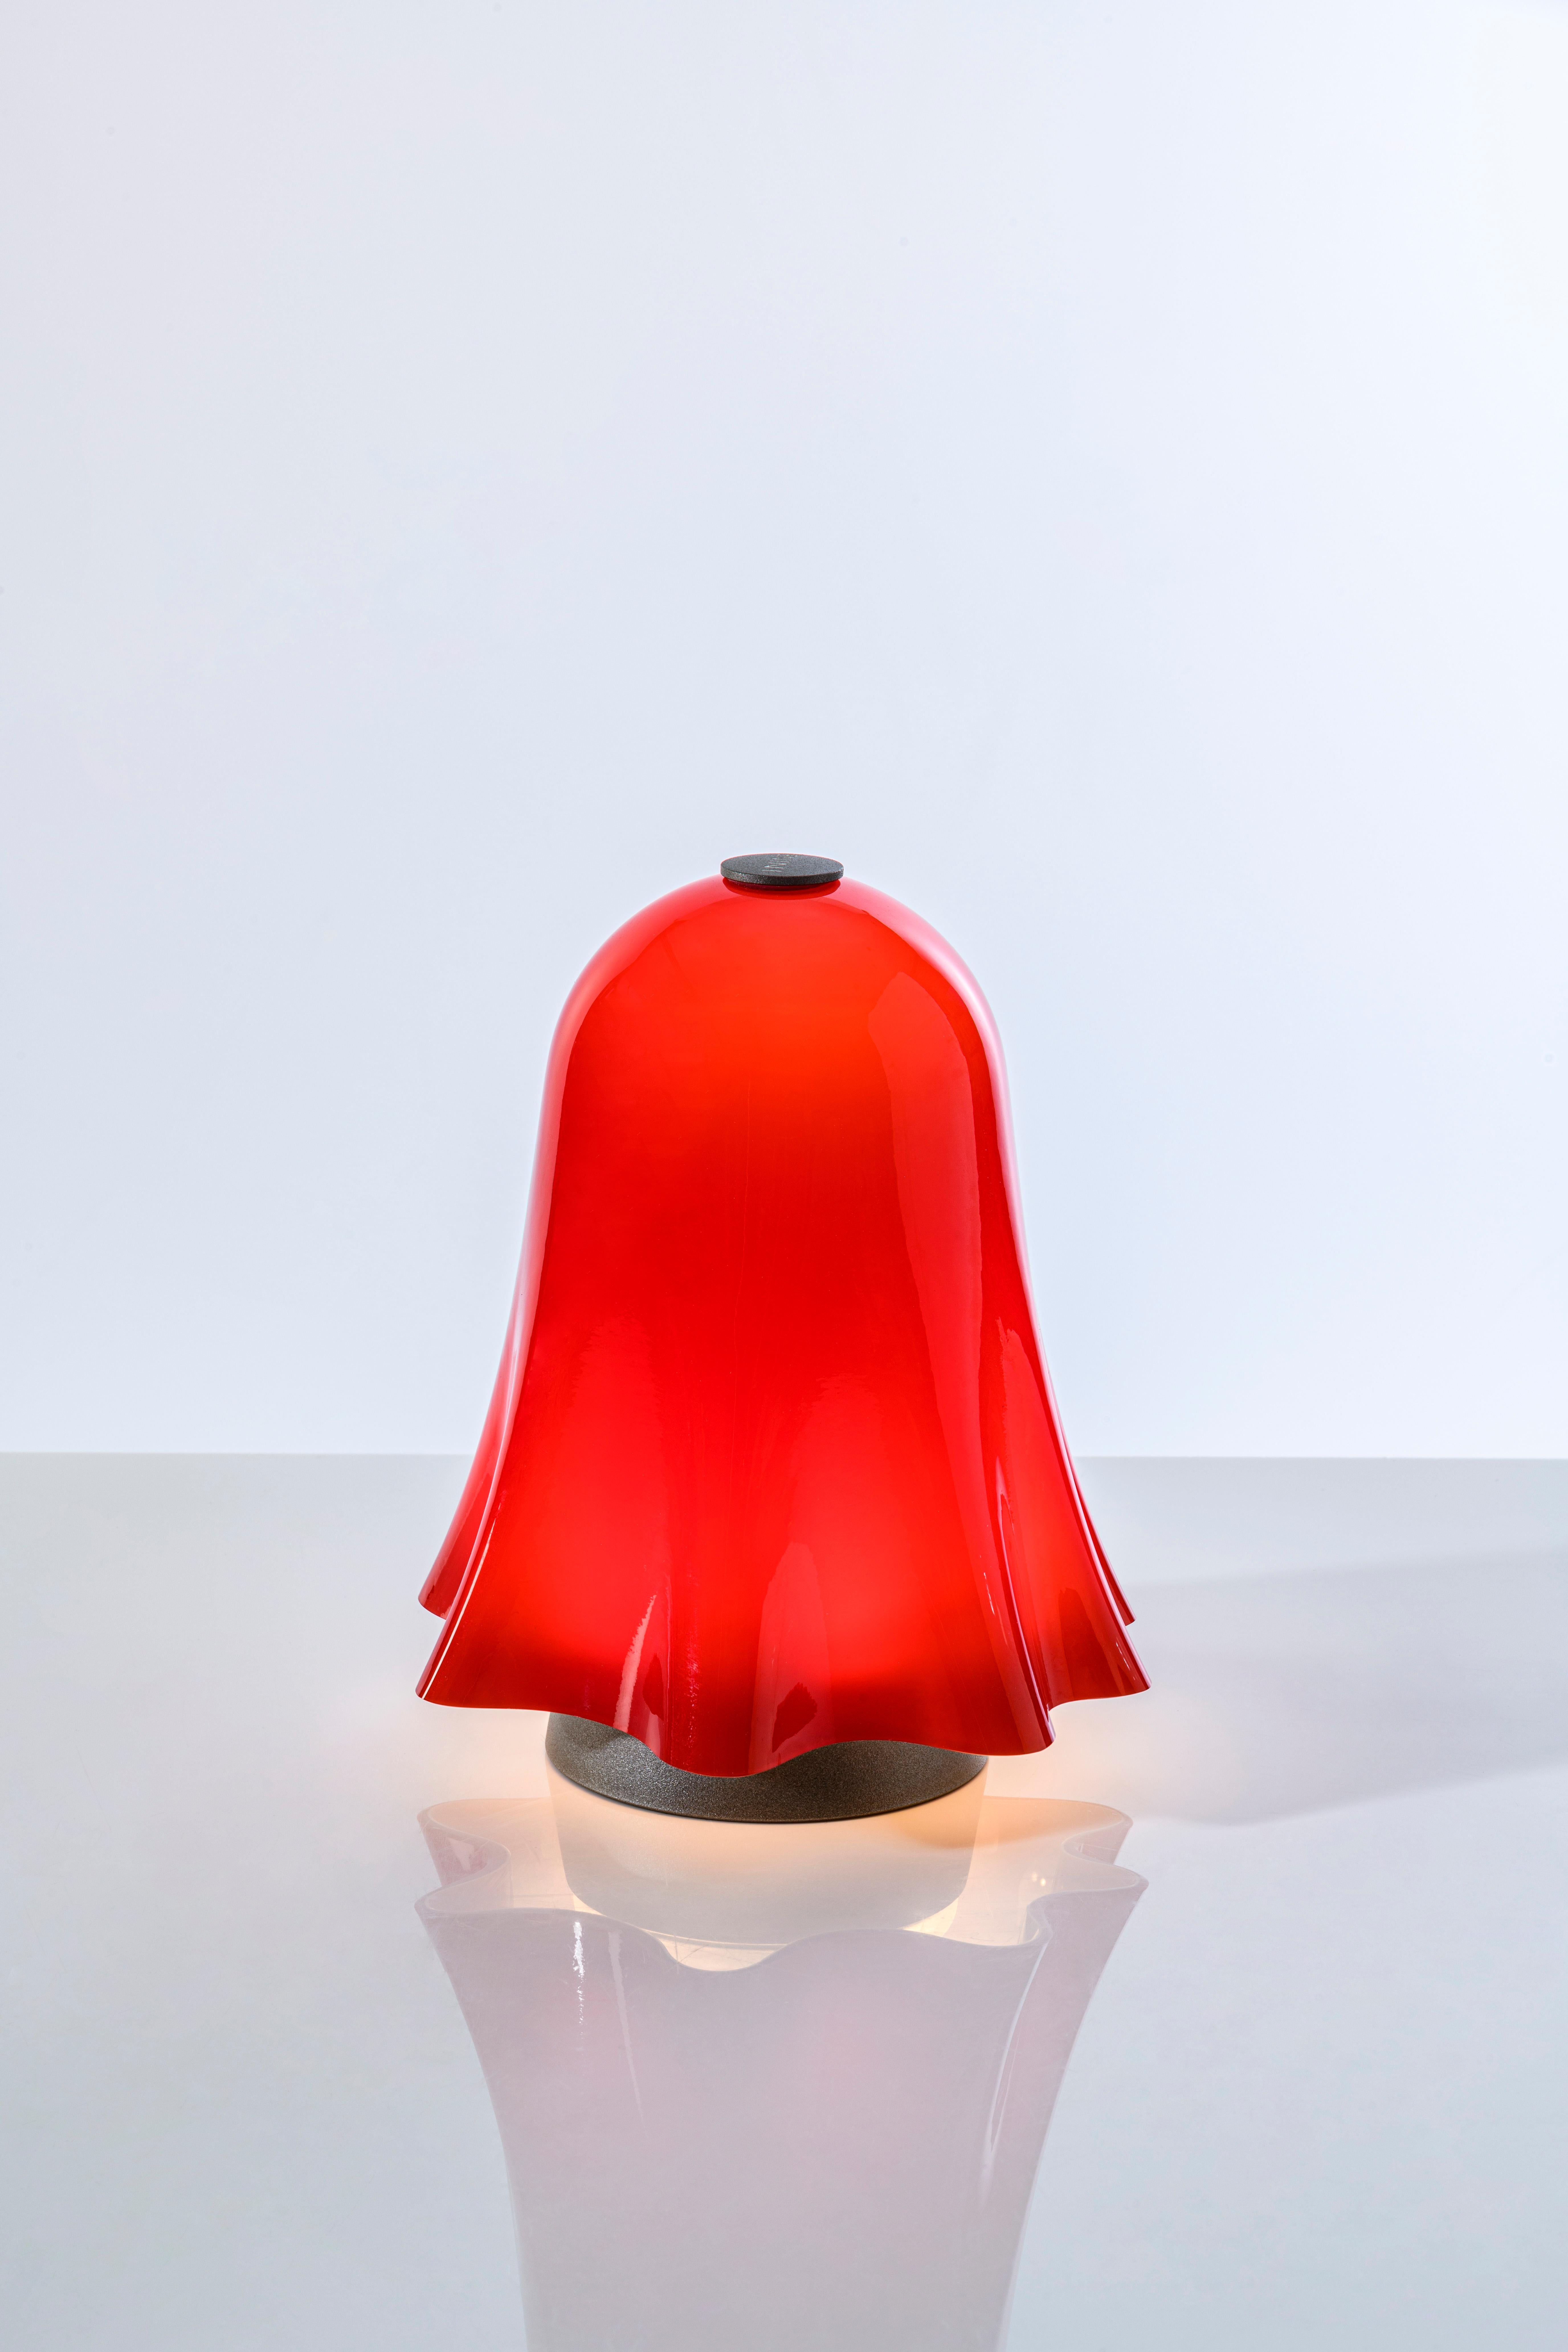 Fait main Lampe de bureau rouge rechargeable Fantasmino du 21e siècle, à gradation, touch table en vente